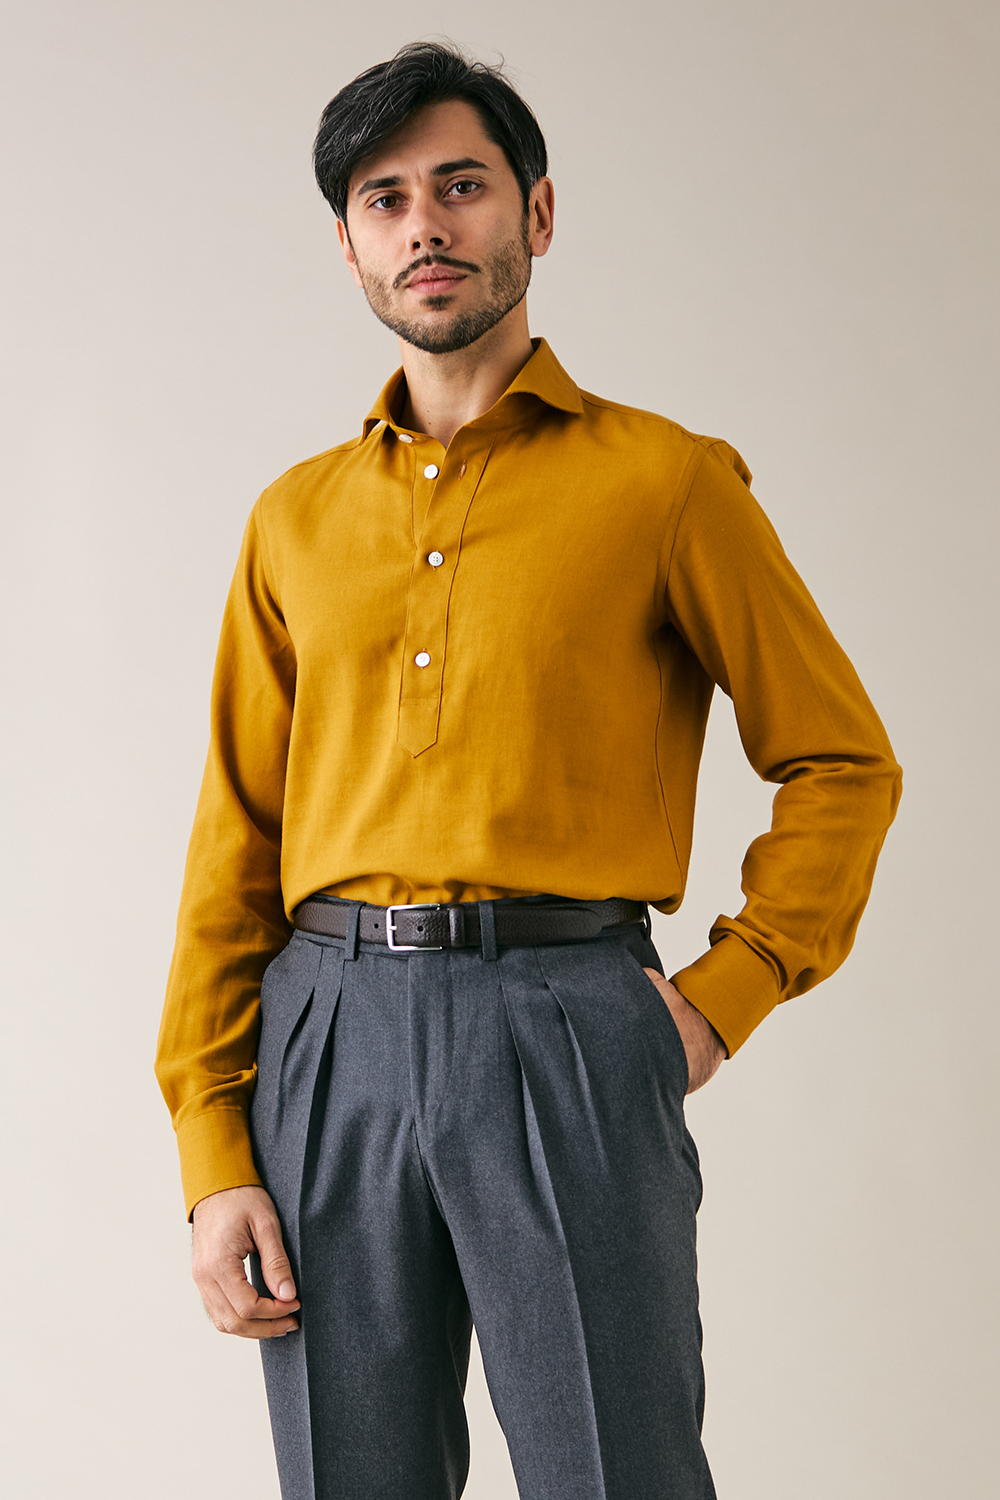 MILDIN Men Solid Formal Yellow Shirt - Buy MILDIN Men Solid Formal Yellow  Shirt Online at Best Prices in India | Flipkart.com